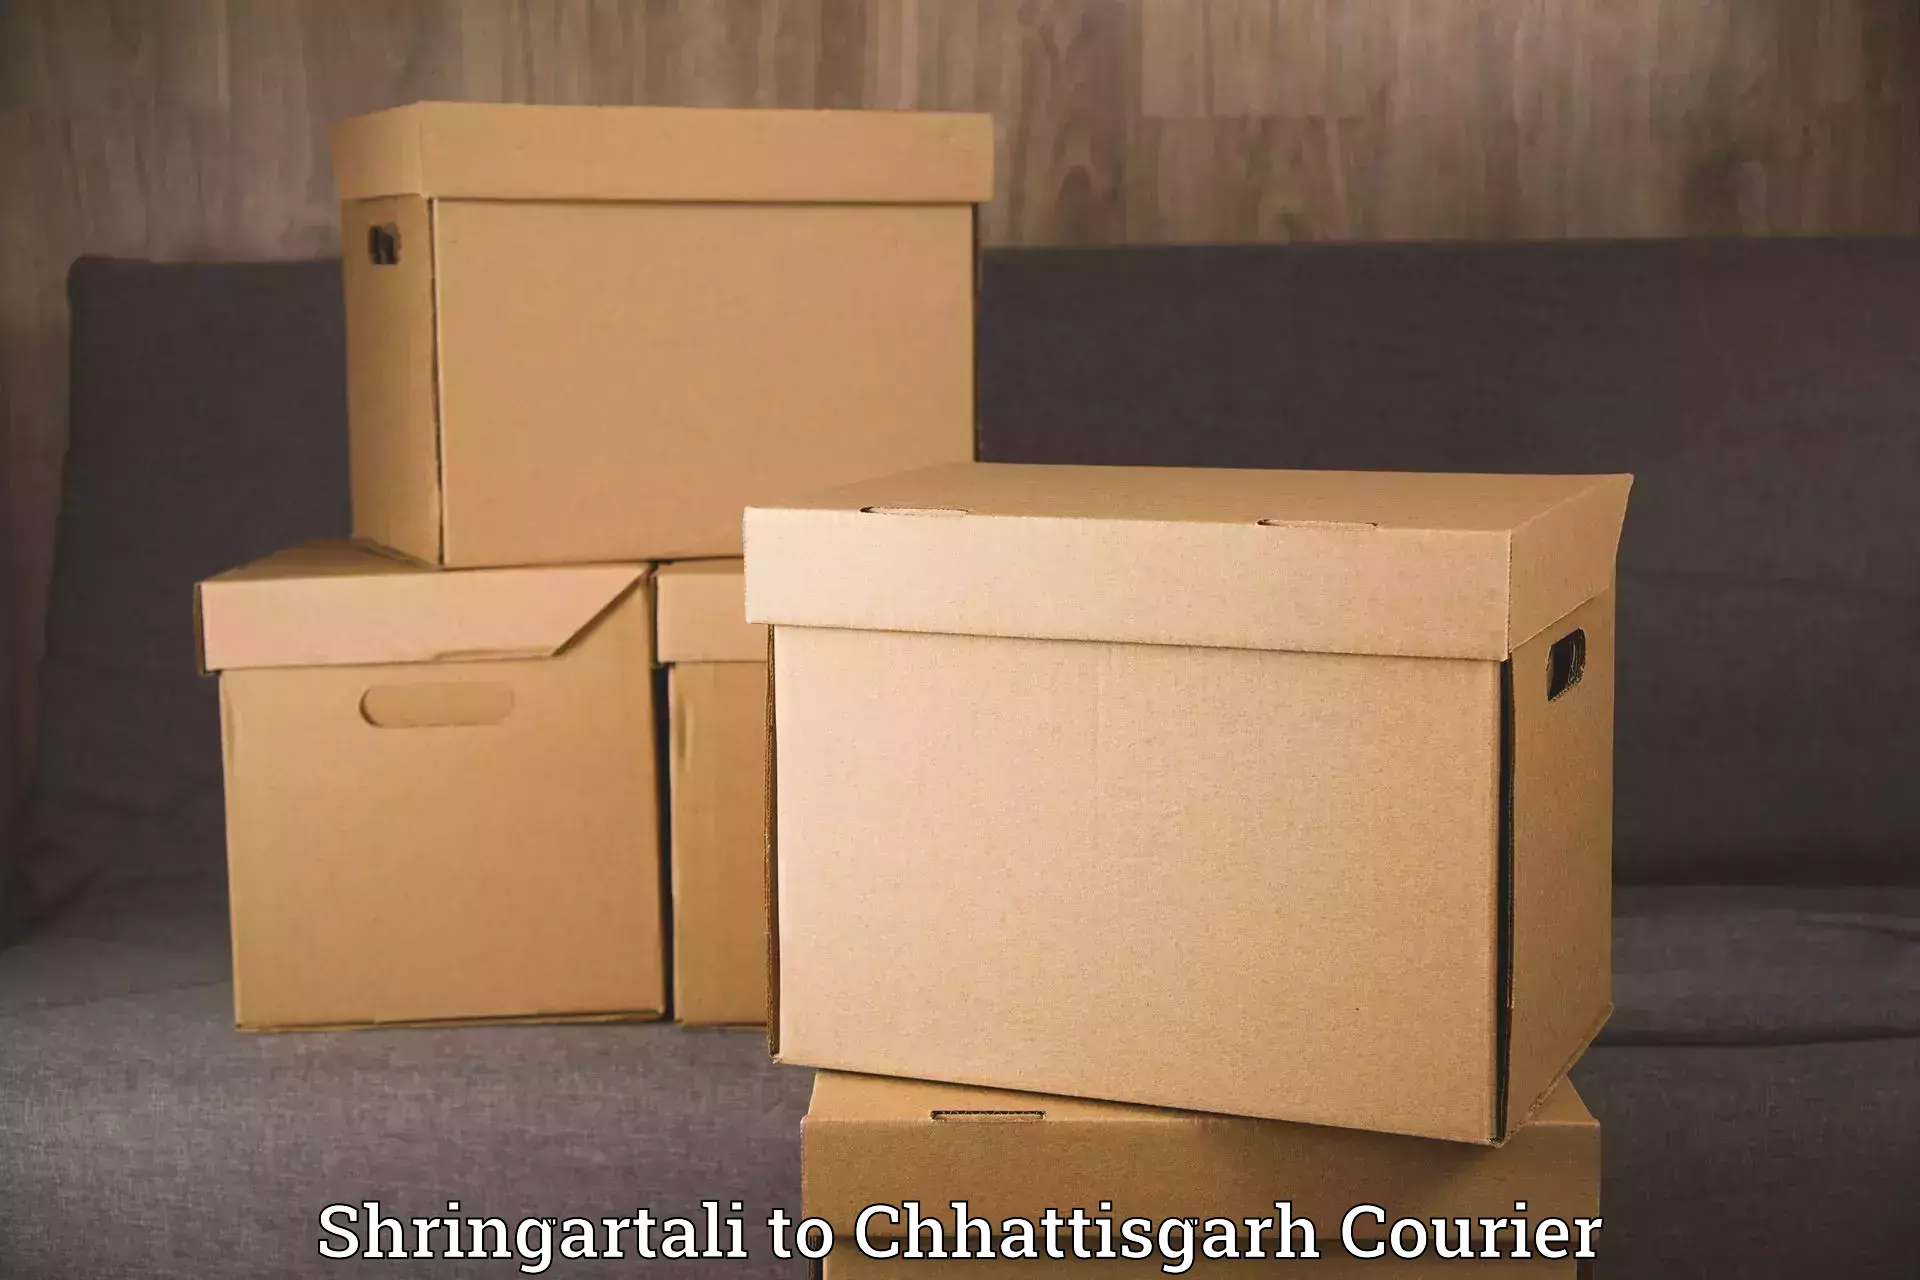 Household moving experts Shringartali to Korea Chhattisgarh